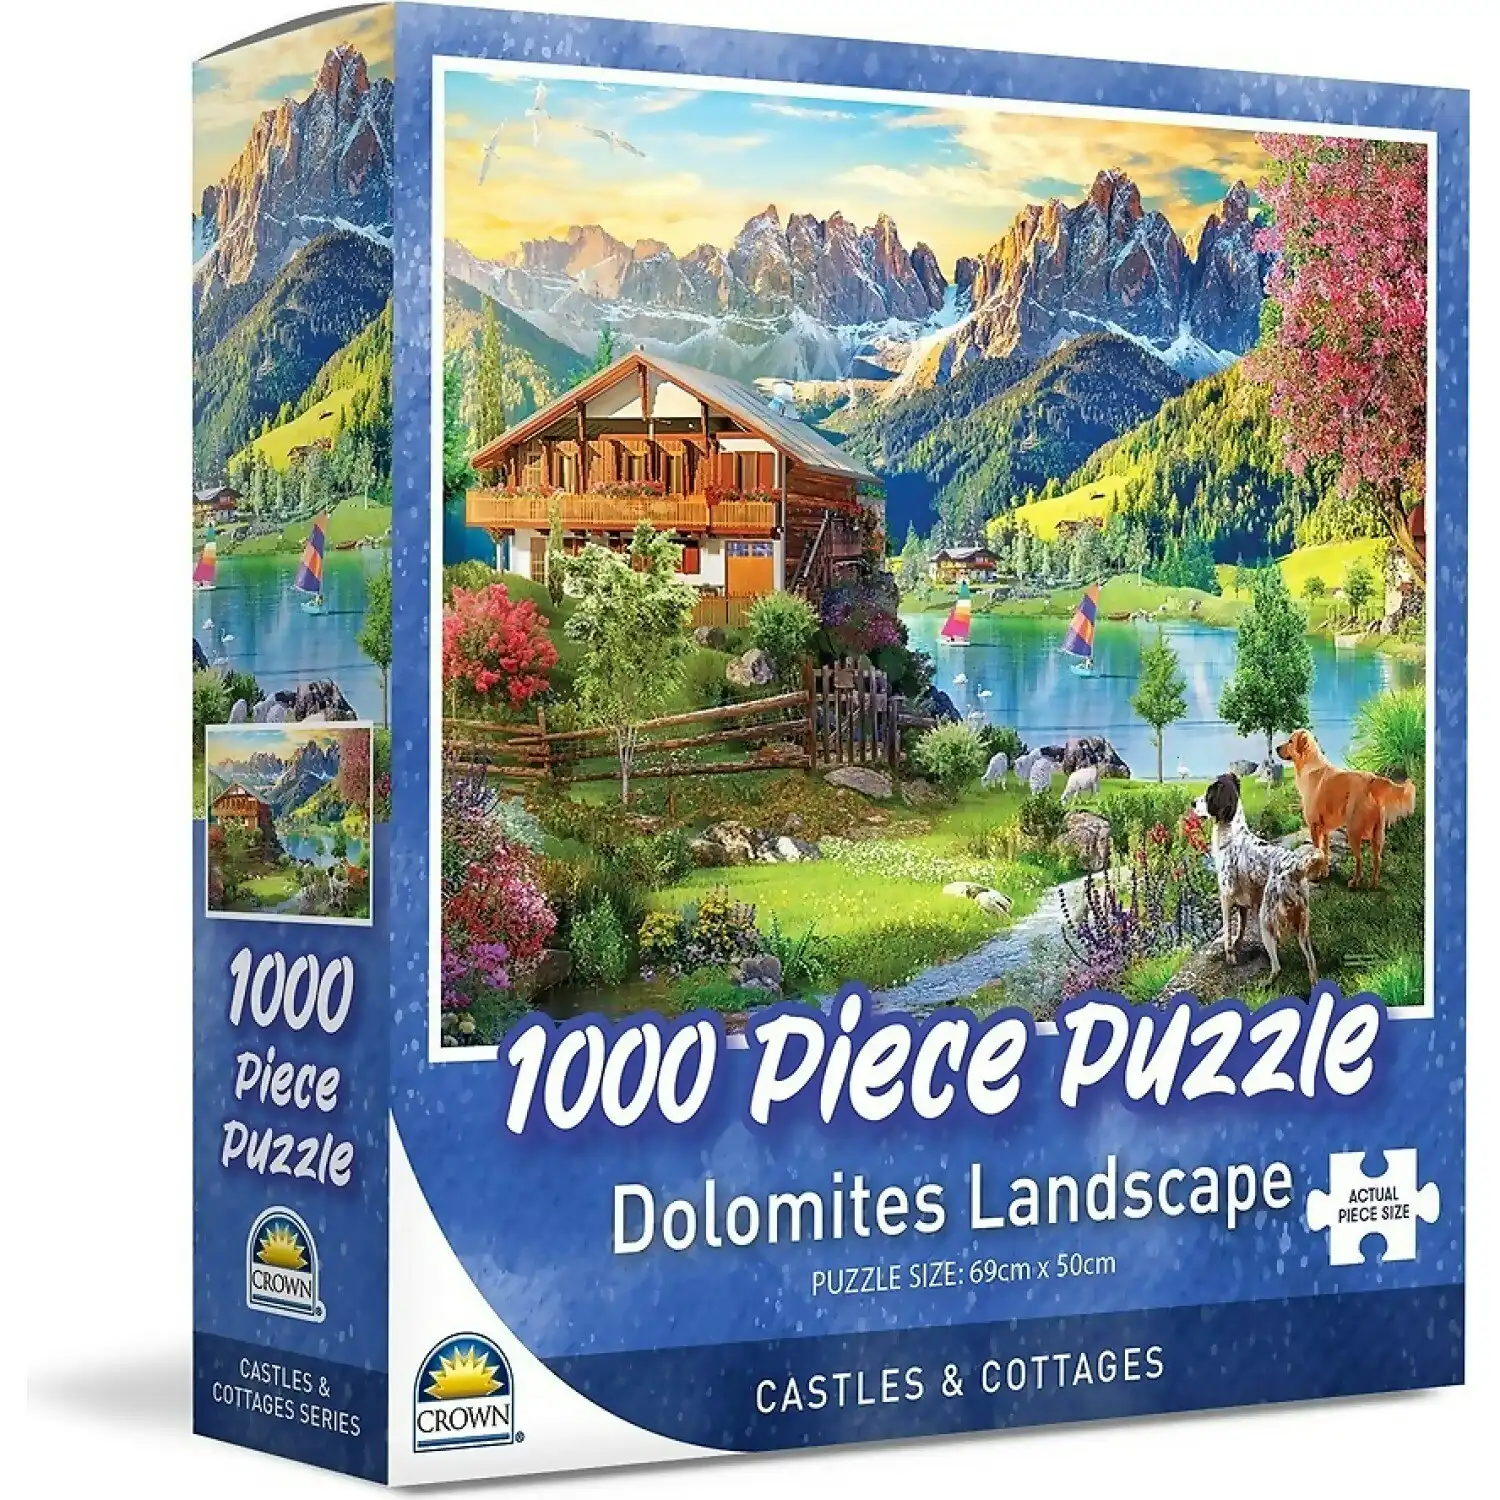 Crown - Dolomites Landscape Jigsaw Puzzle 1000pc